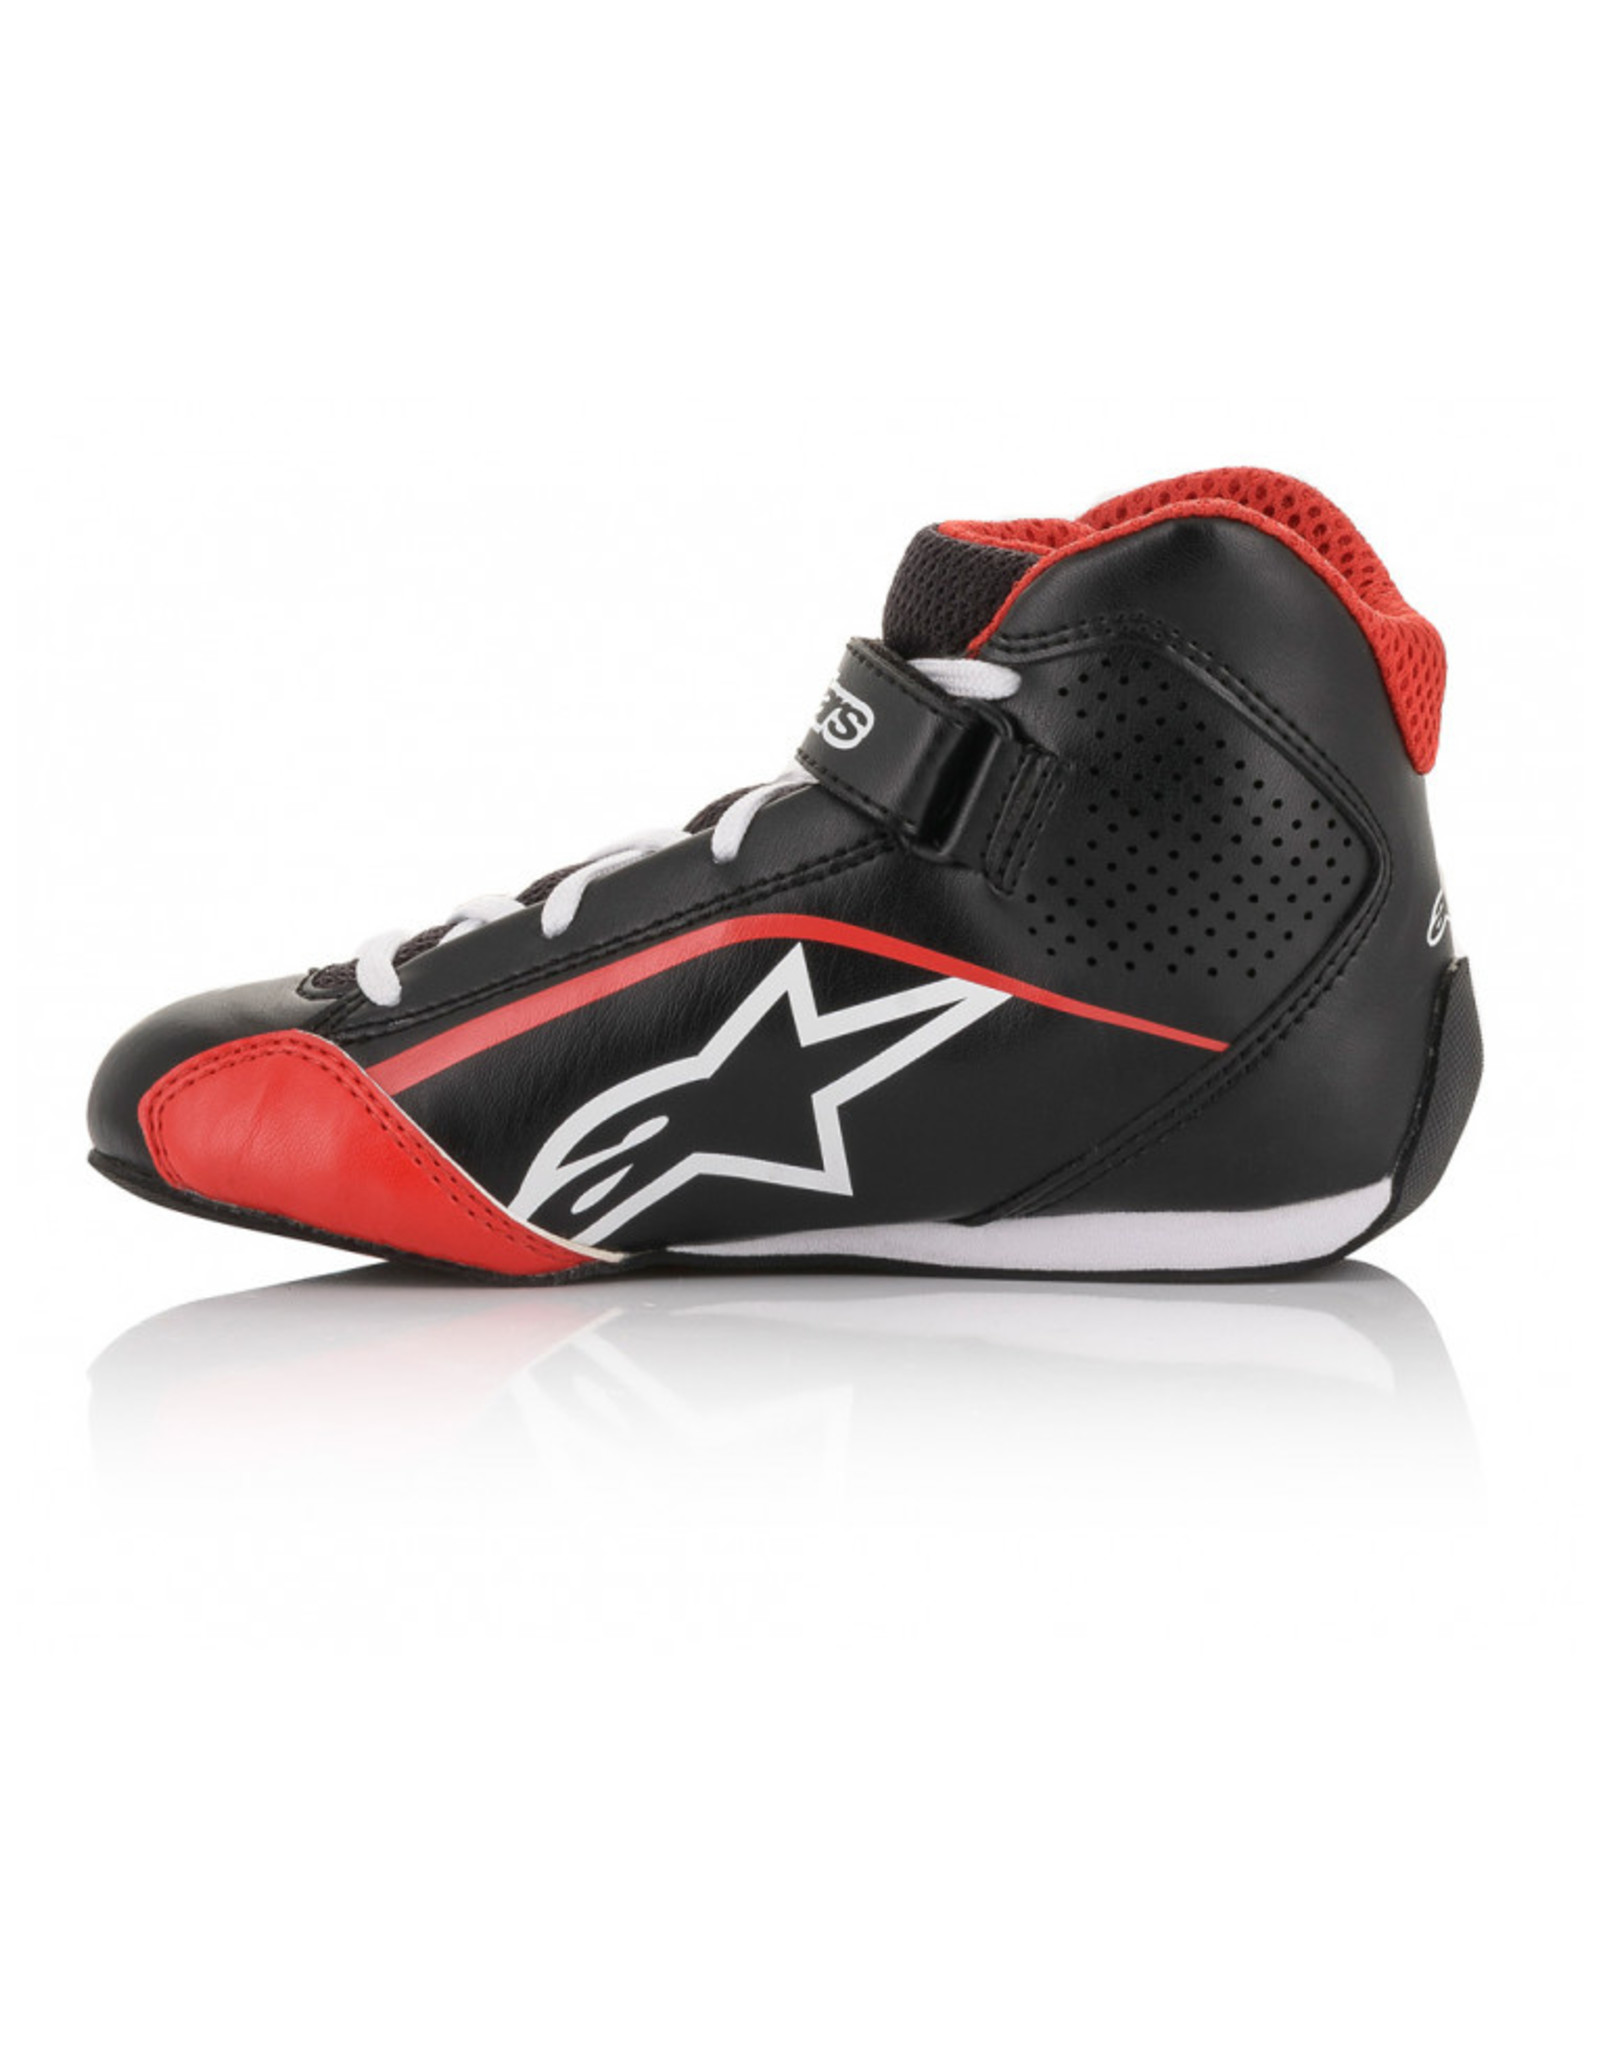 Alpinestars Alpinestars Tech-1 K S (Childeren kart shoes) Black/Red/white